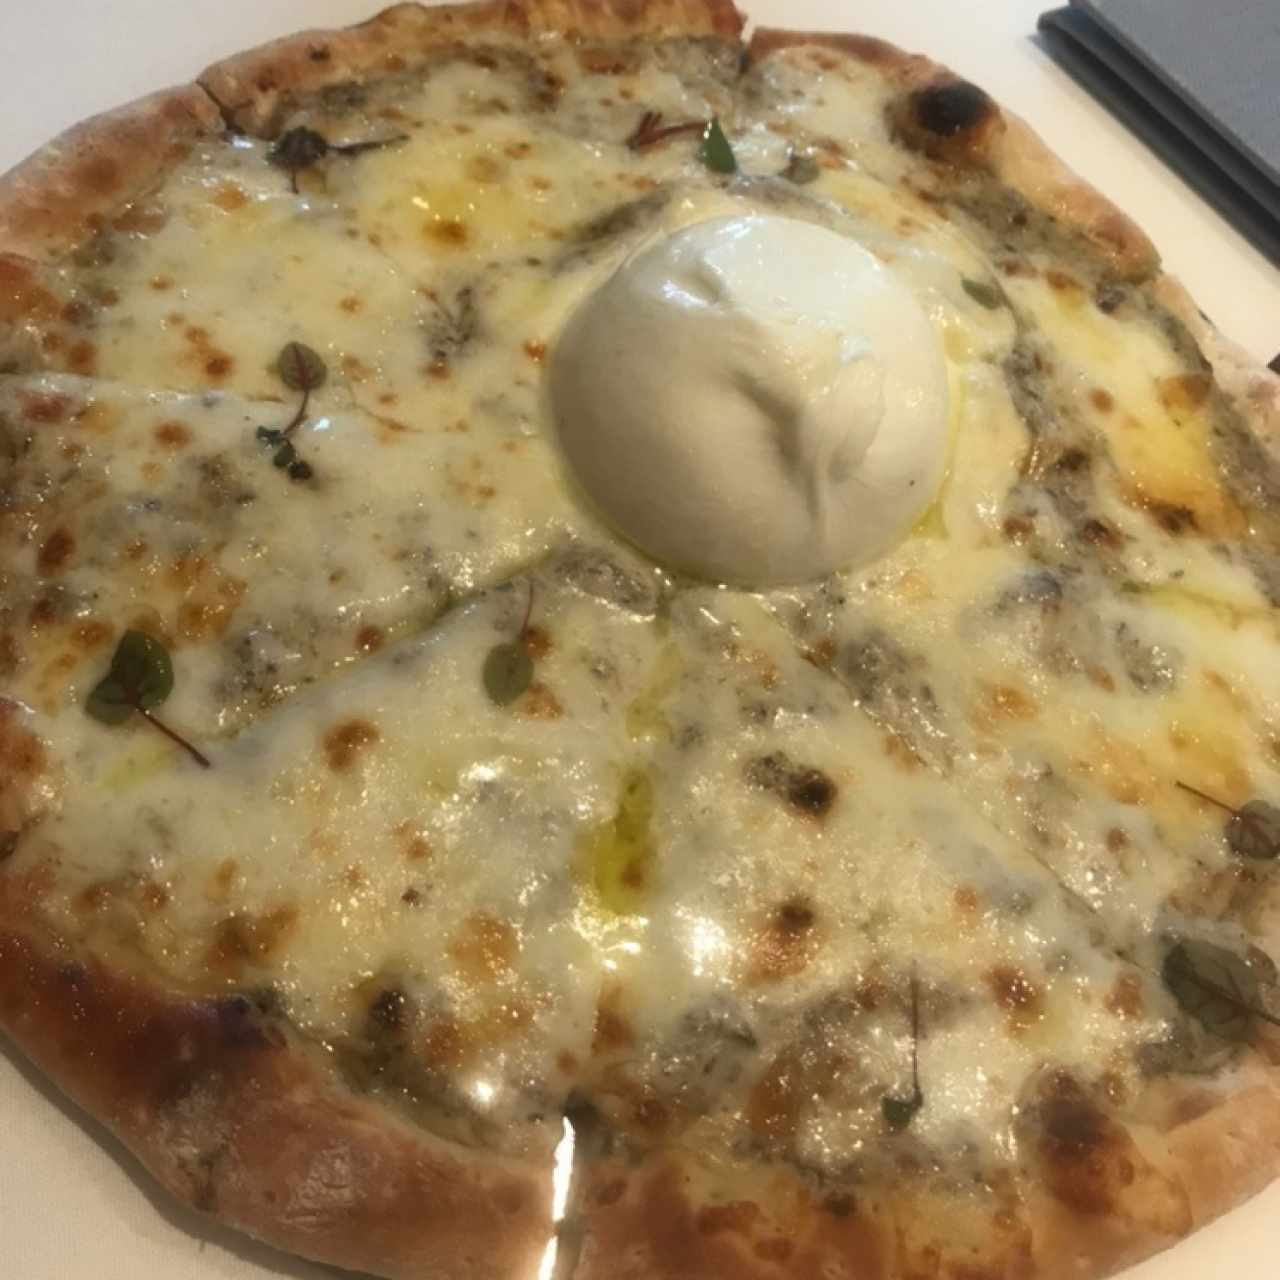 Pizza Bianca: crema de tartufo y media burrata